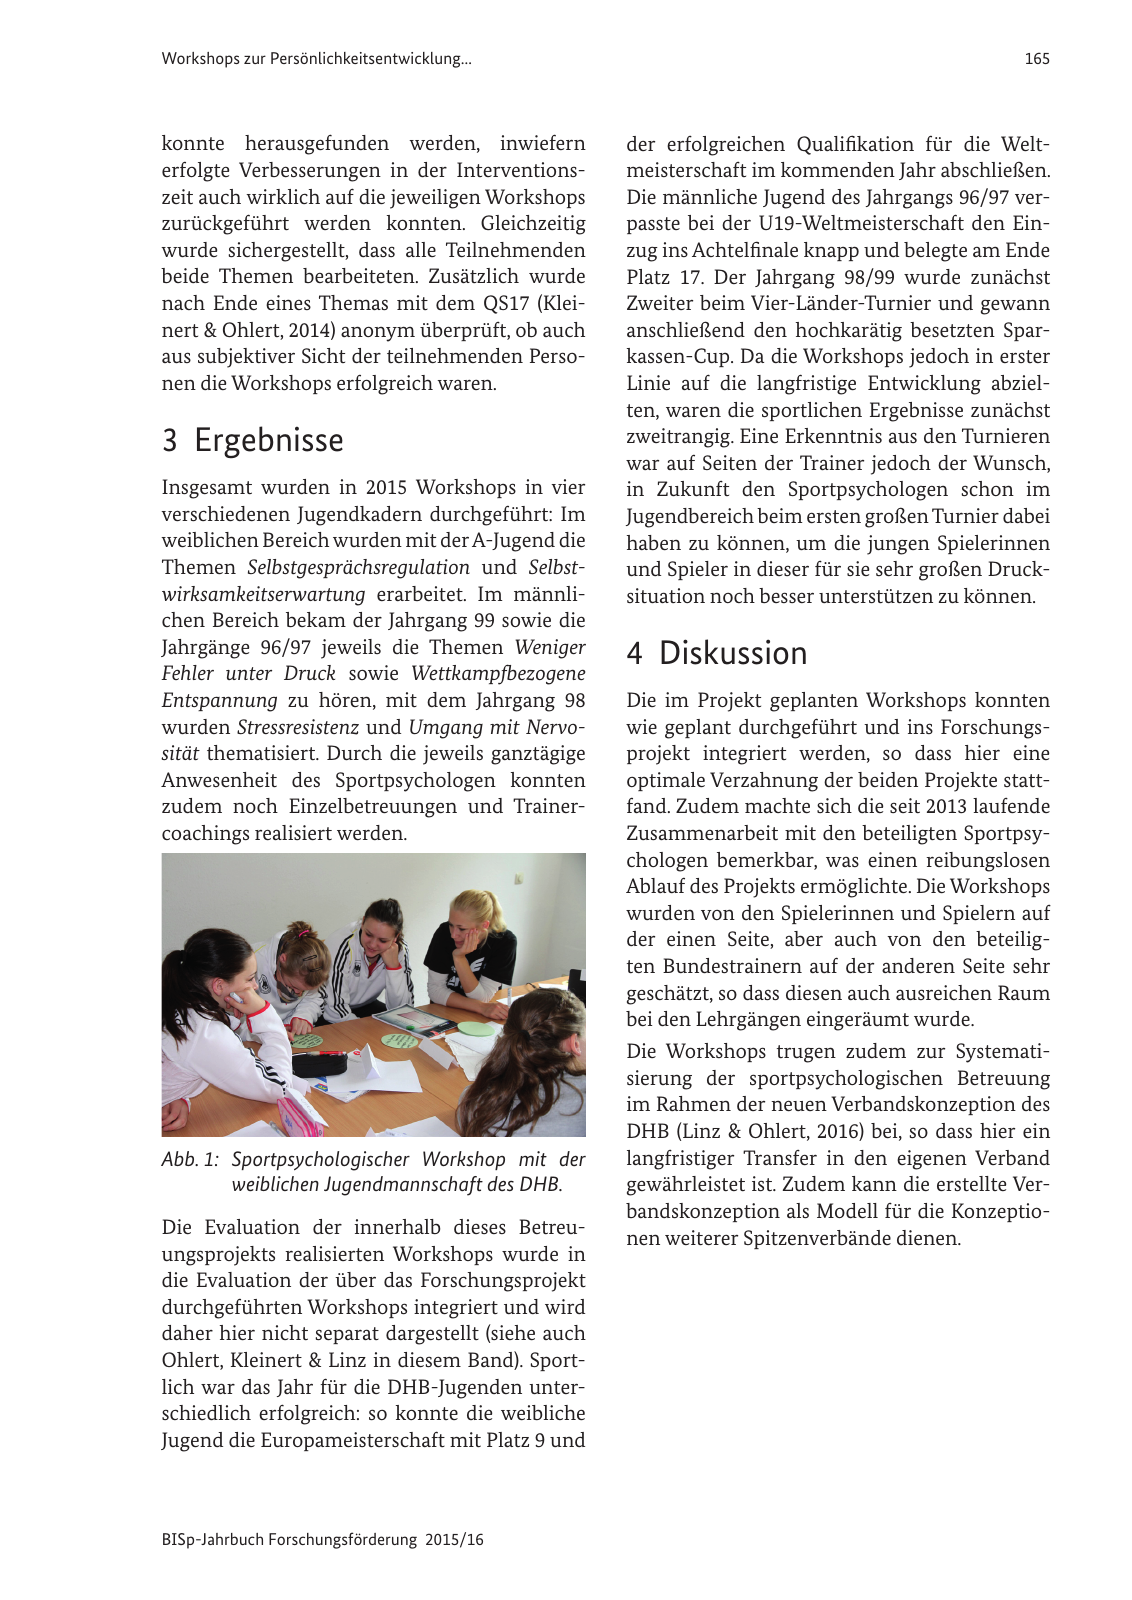 Vorschau BISp-Jahrbuch Forschungsförderung 2015/16 Seite 167